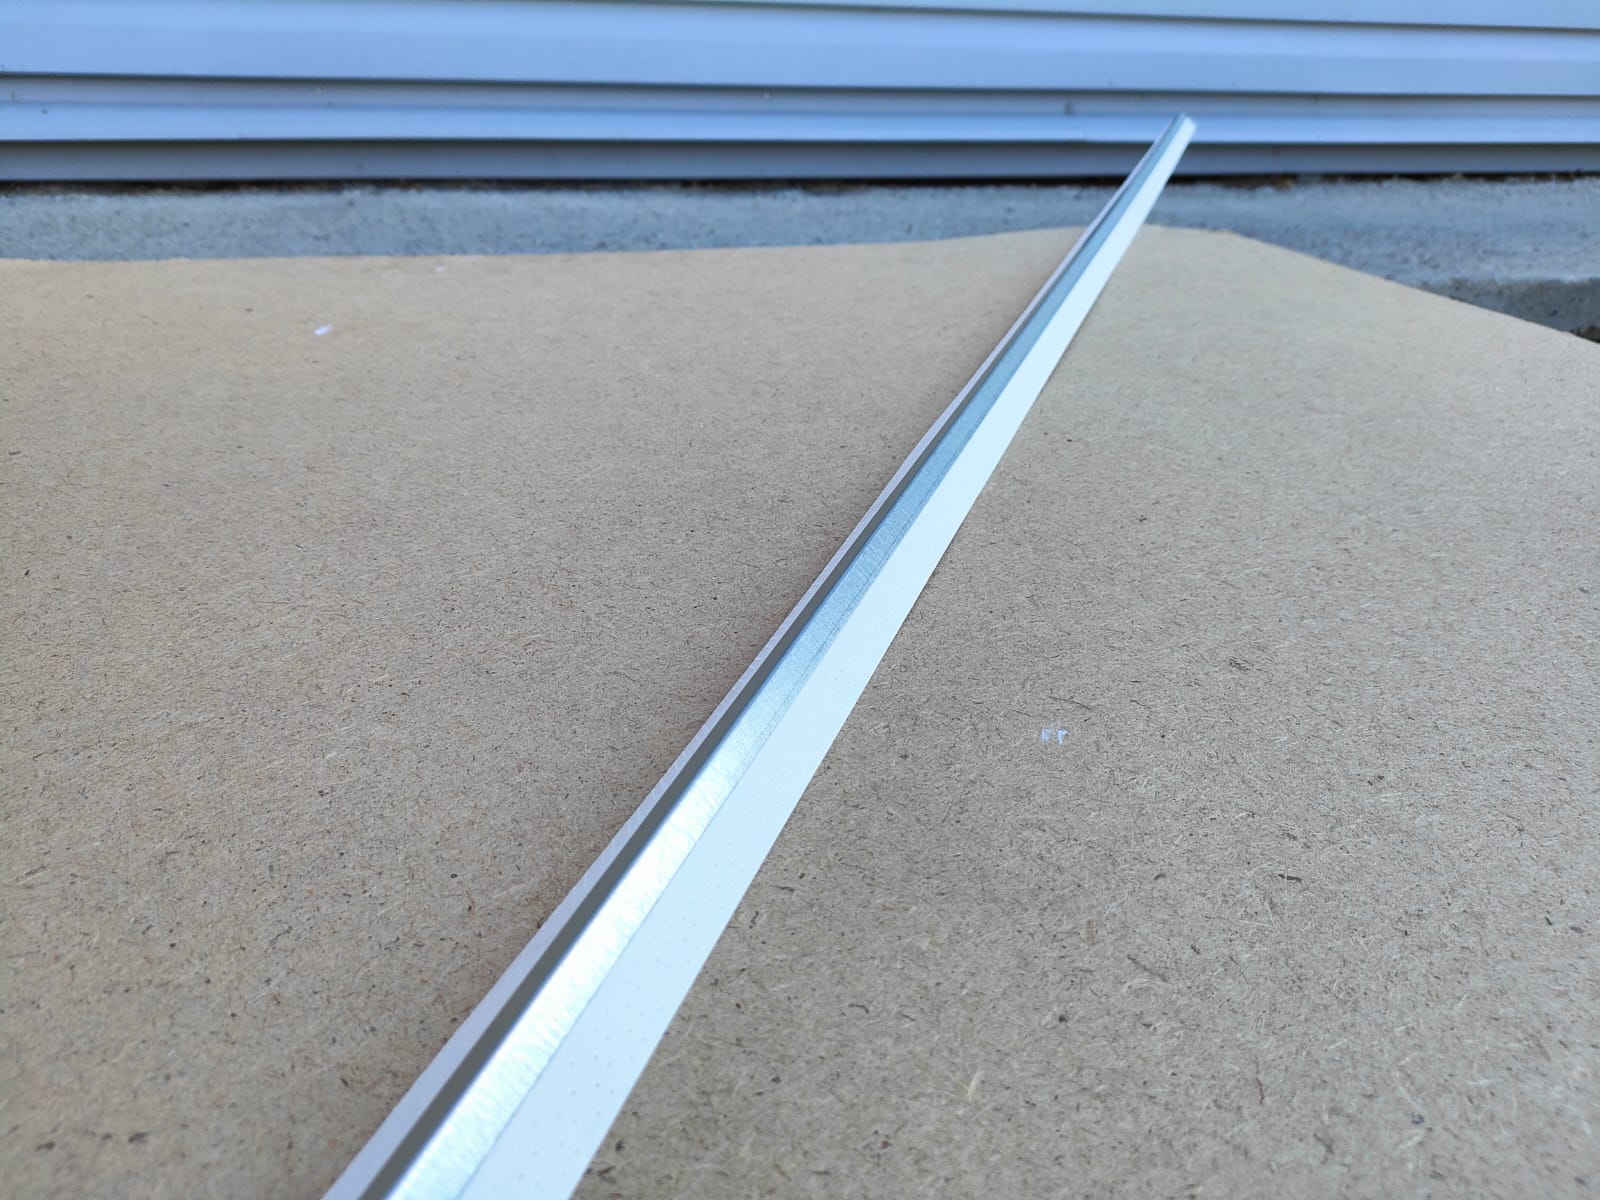 Металлизированный уголок sheetrock (Шитрок) на бумажной основе для внутренних углов 3,05 м